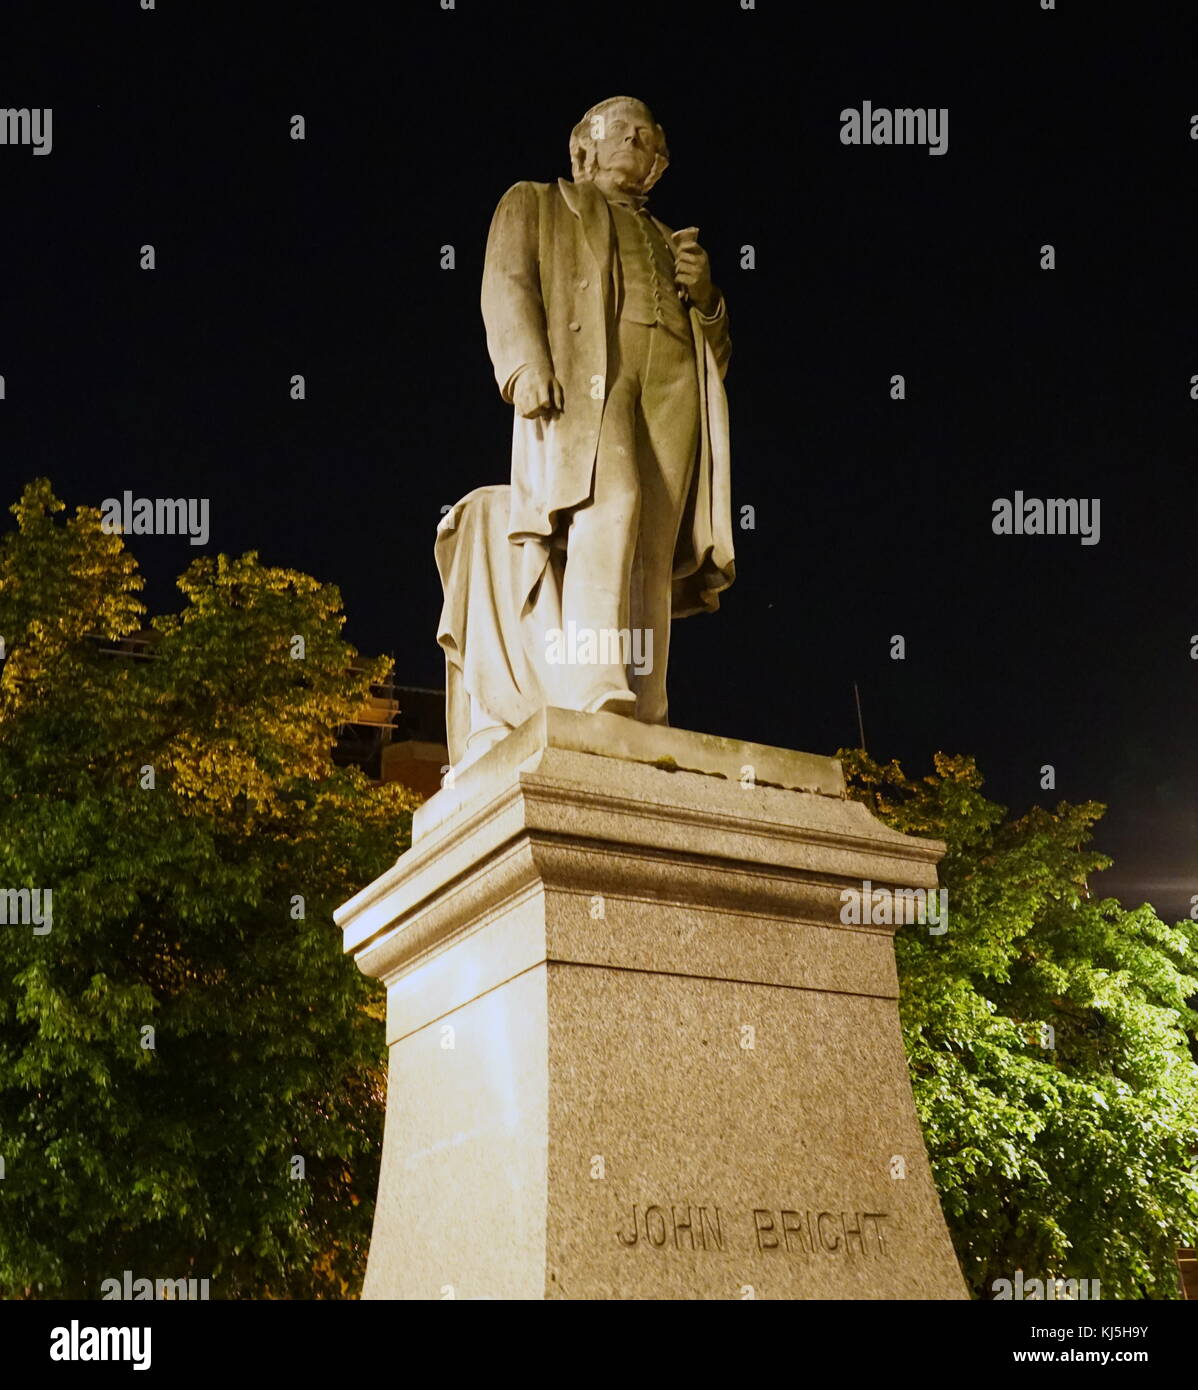 La statue de John Bright, qui est situé dans la région de Albert Square, a été créé par Albert Bruce-Joy. John Bright (16 novembre 1811 - 27 mars 1889), Quaker, était un homme d'État libéral et radical, l'un des plus grands orateurs de sa génération et un promoteur de politiques de libre-échange. Banque D'Images